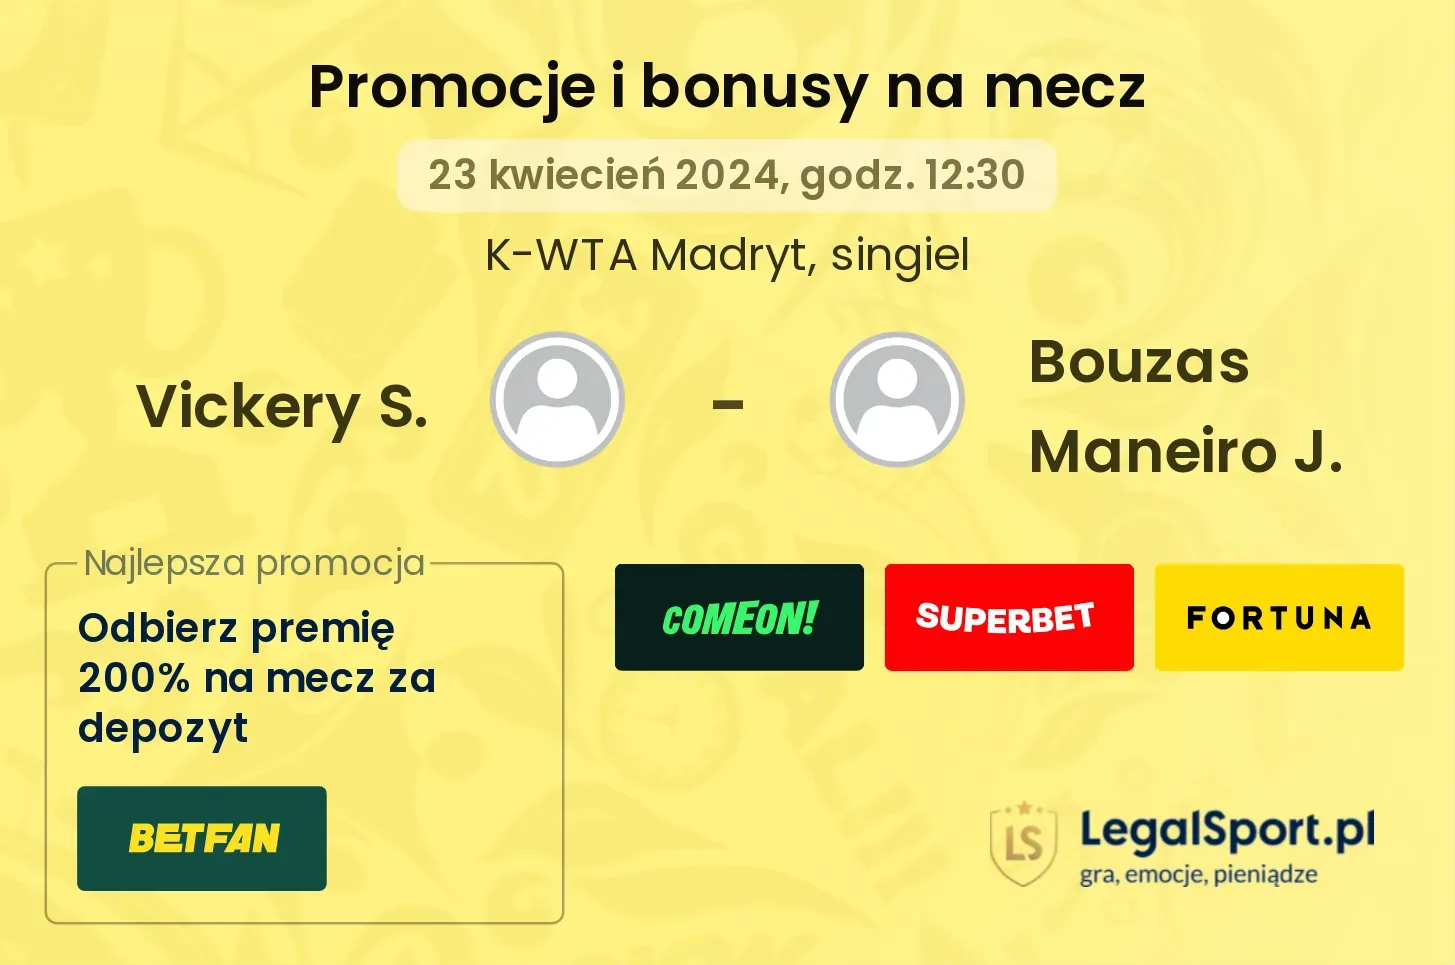 Vickery S. - Bouzas Maneiro J. promocje bonusy na mecz